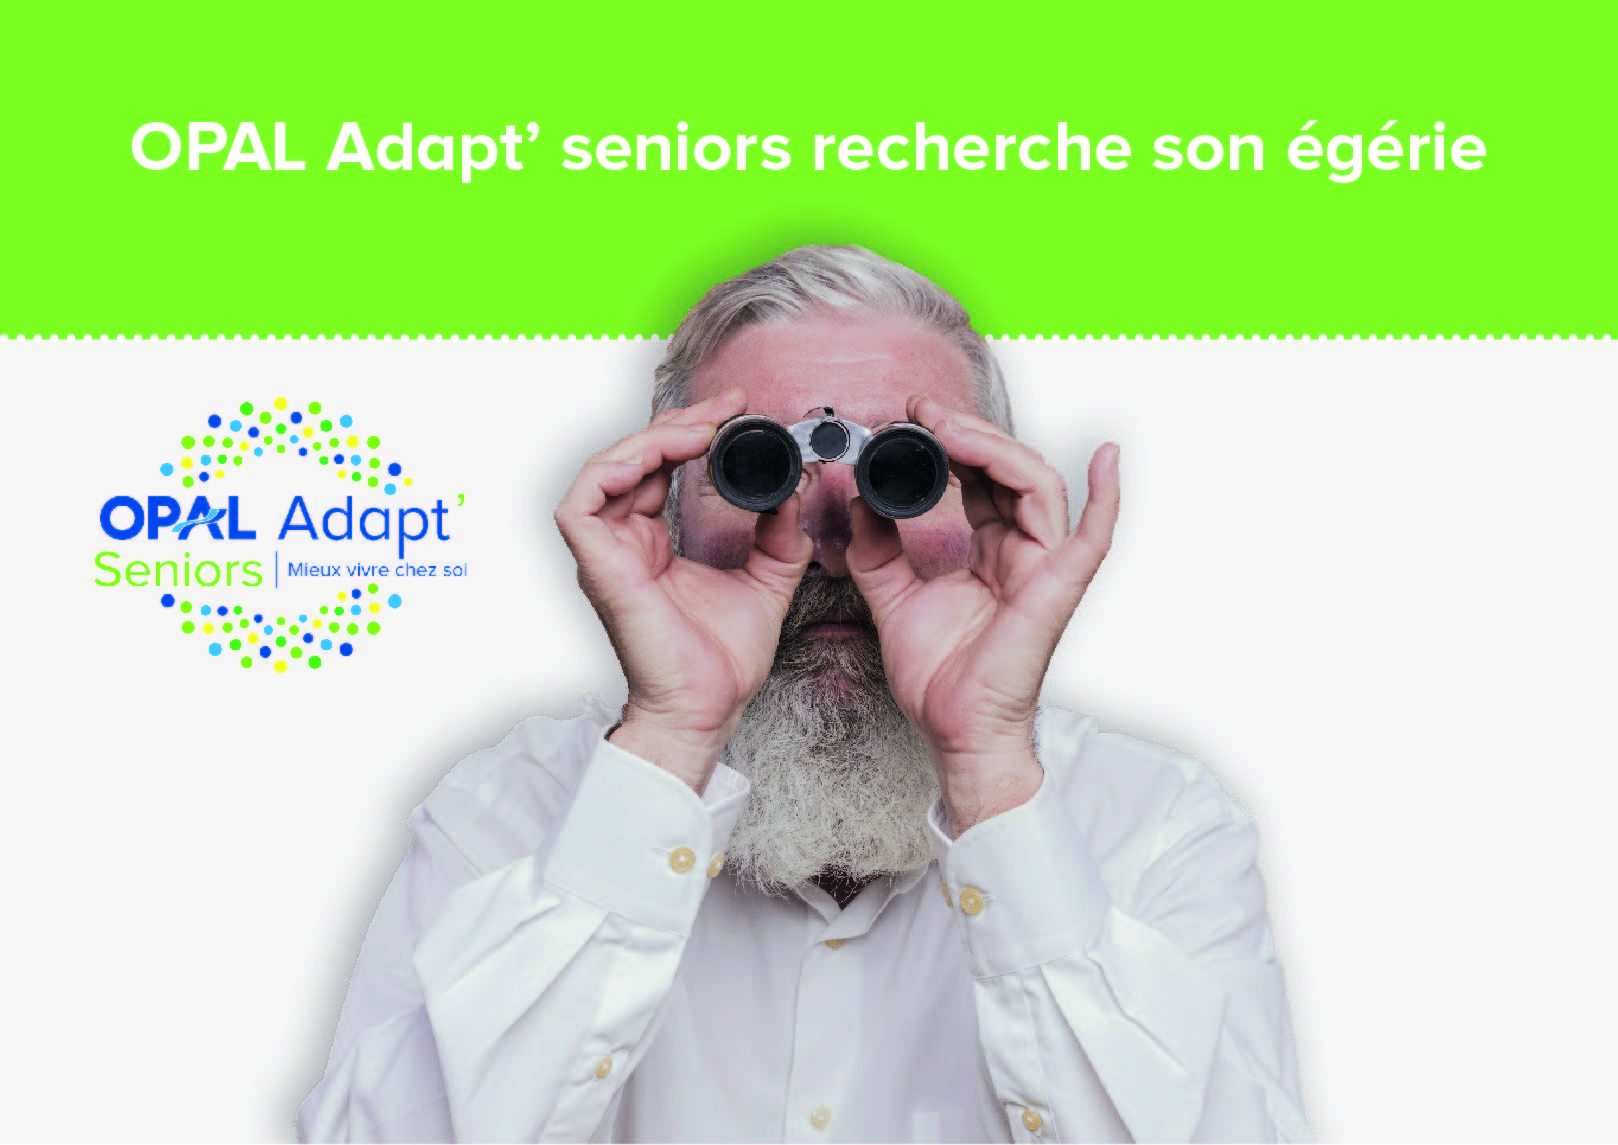 OPAL Adapt’ seniors recherche son égérie